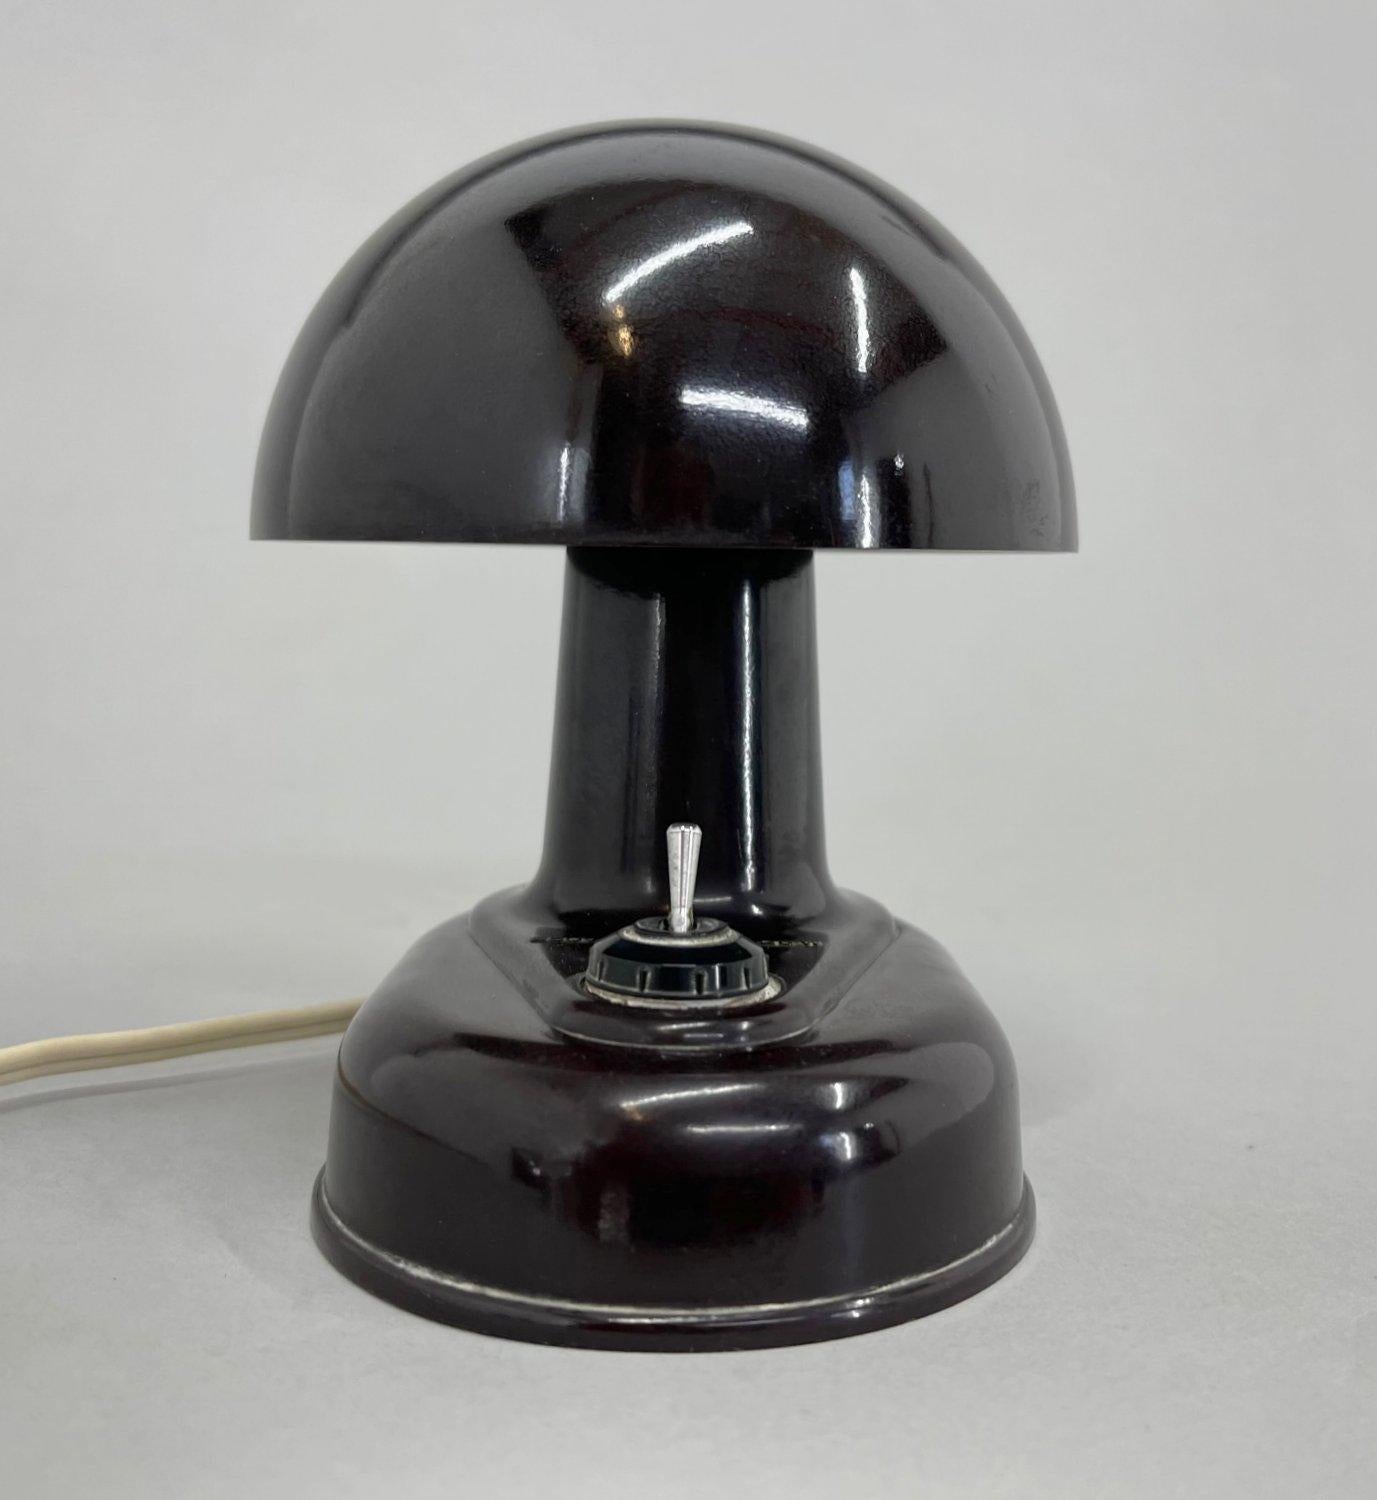 Czech Table or Wall Bakelite Mushroom Lamp, 1960's